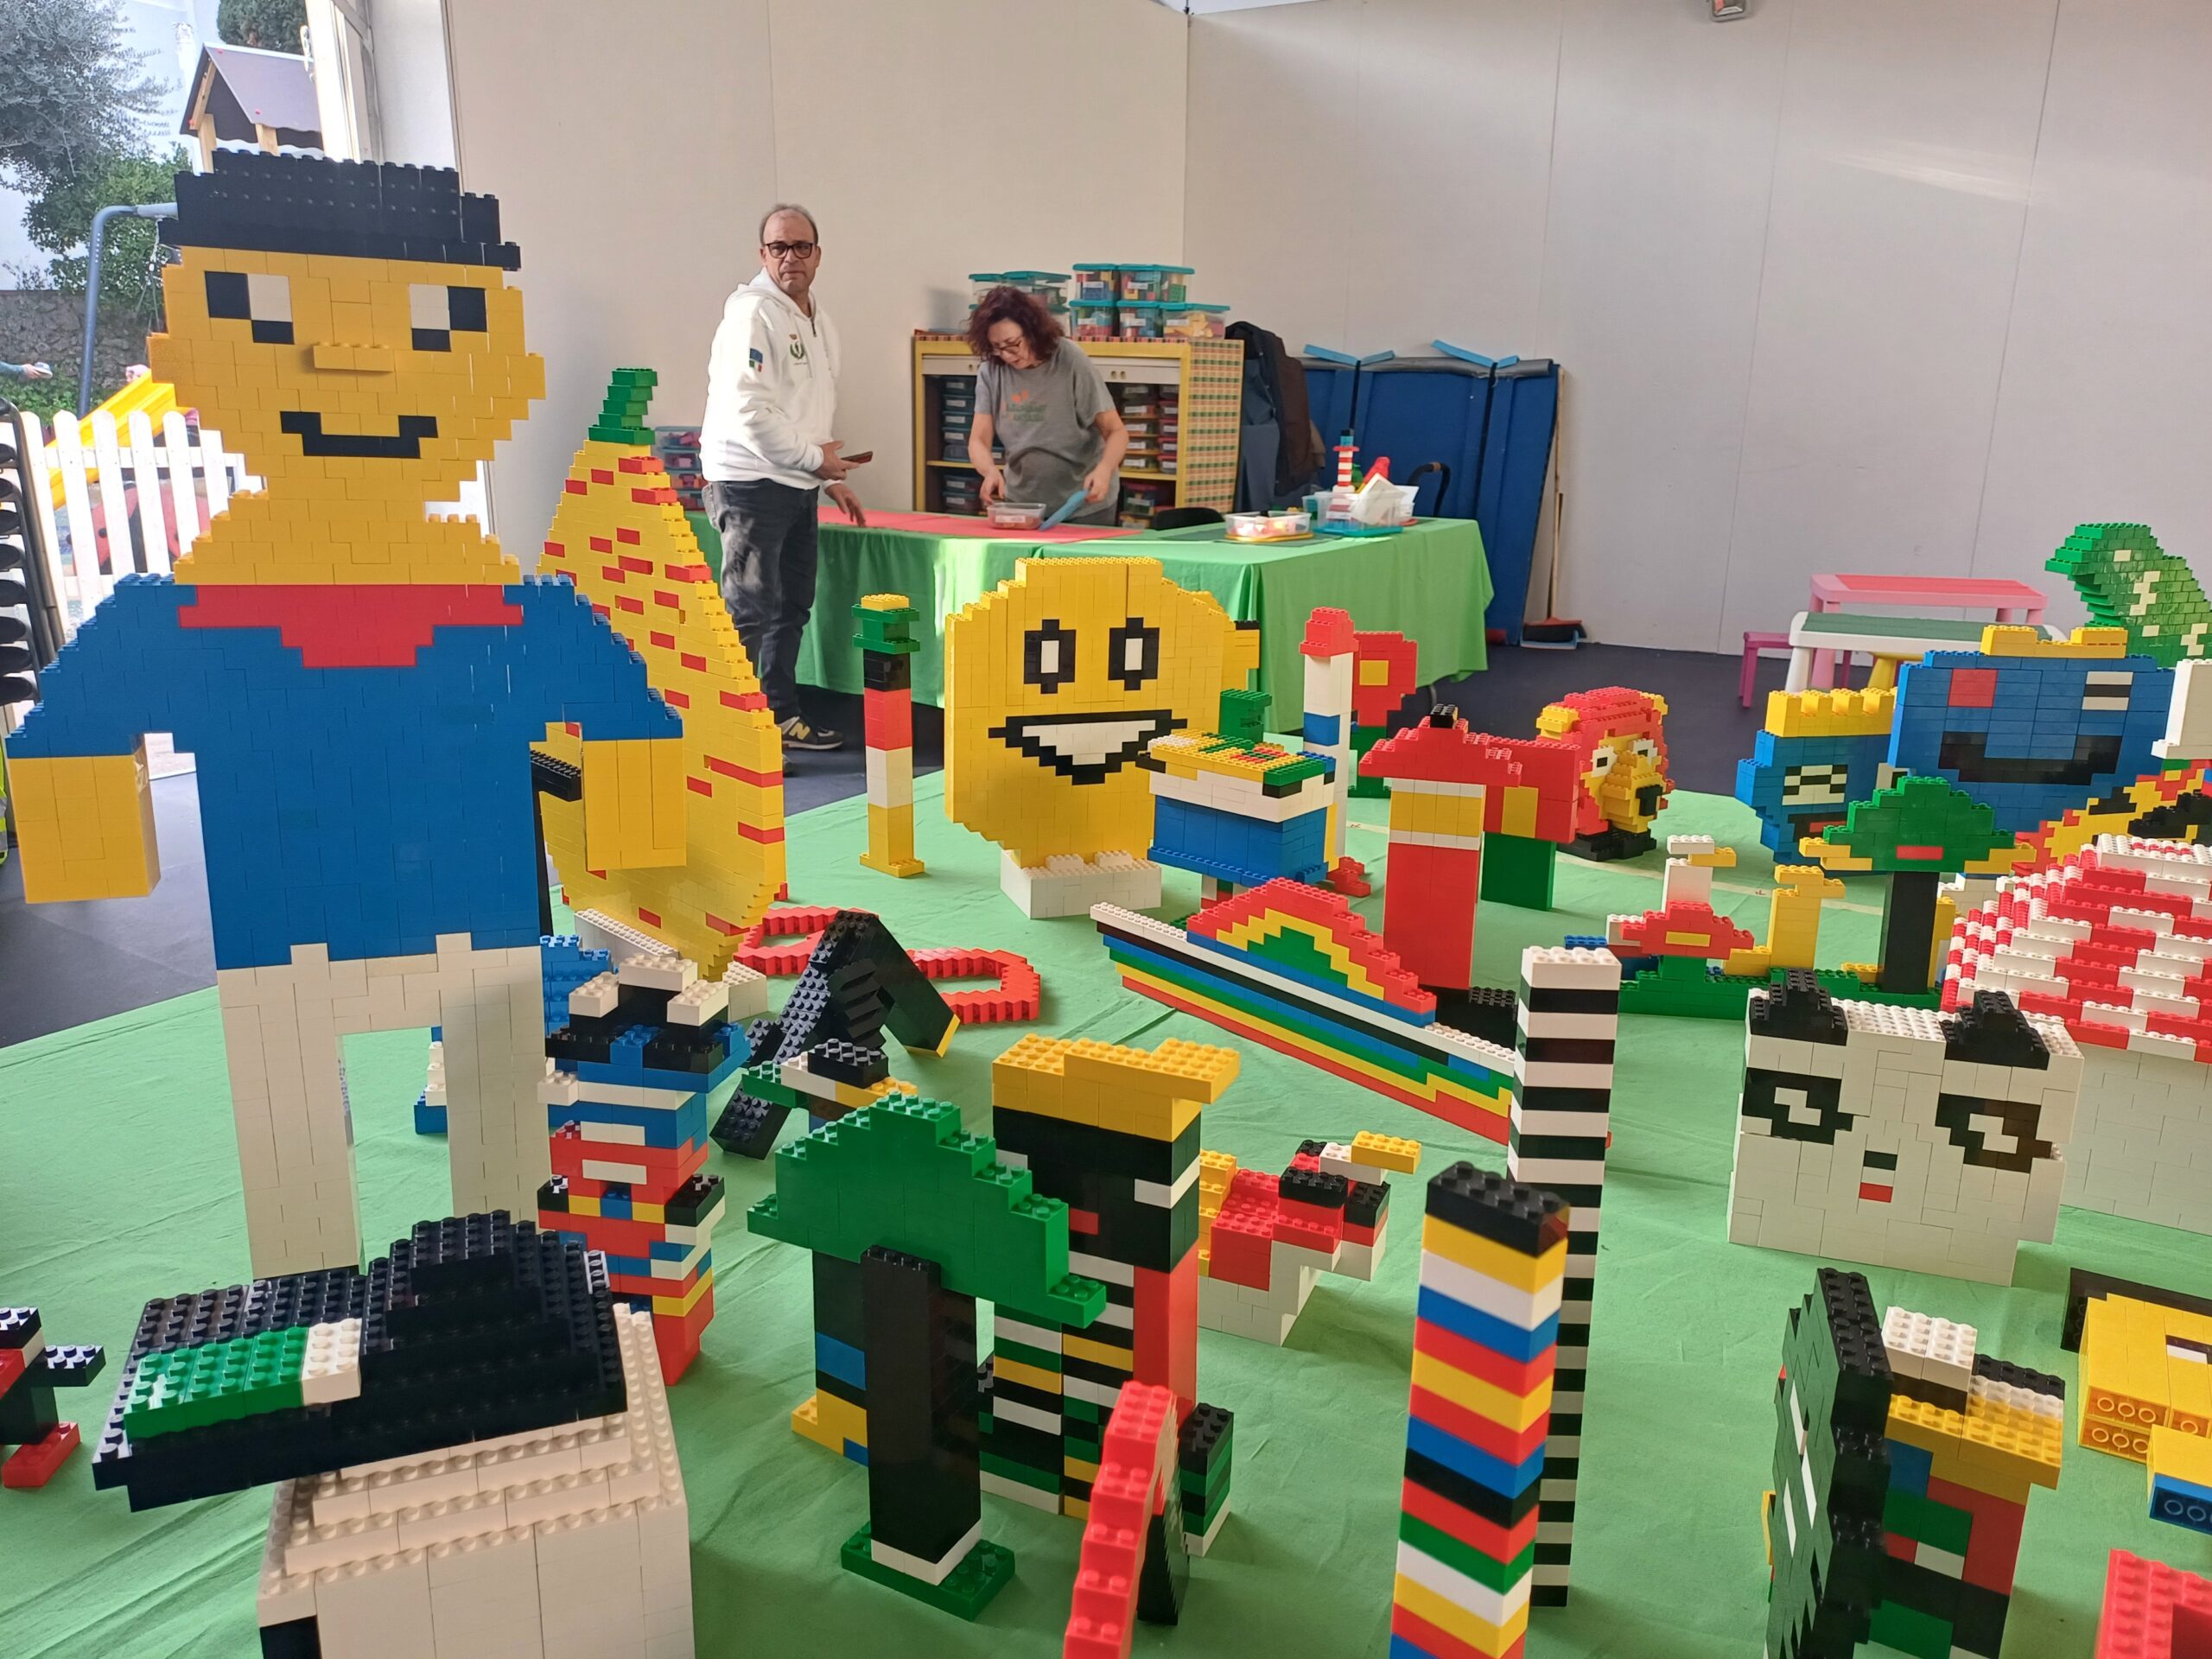 Inclusione sociale, divertimento e grande partecipazione: tre giorni a Capri con i mattoncini Lego (photogallery)